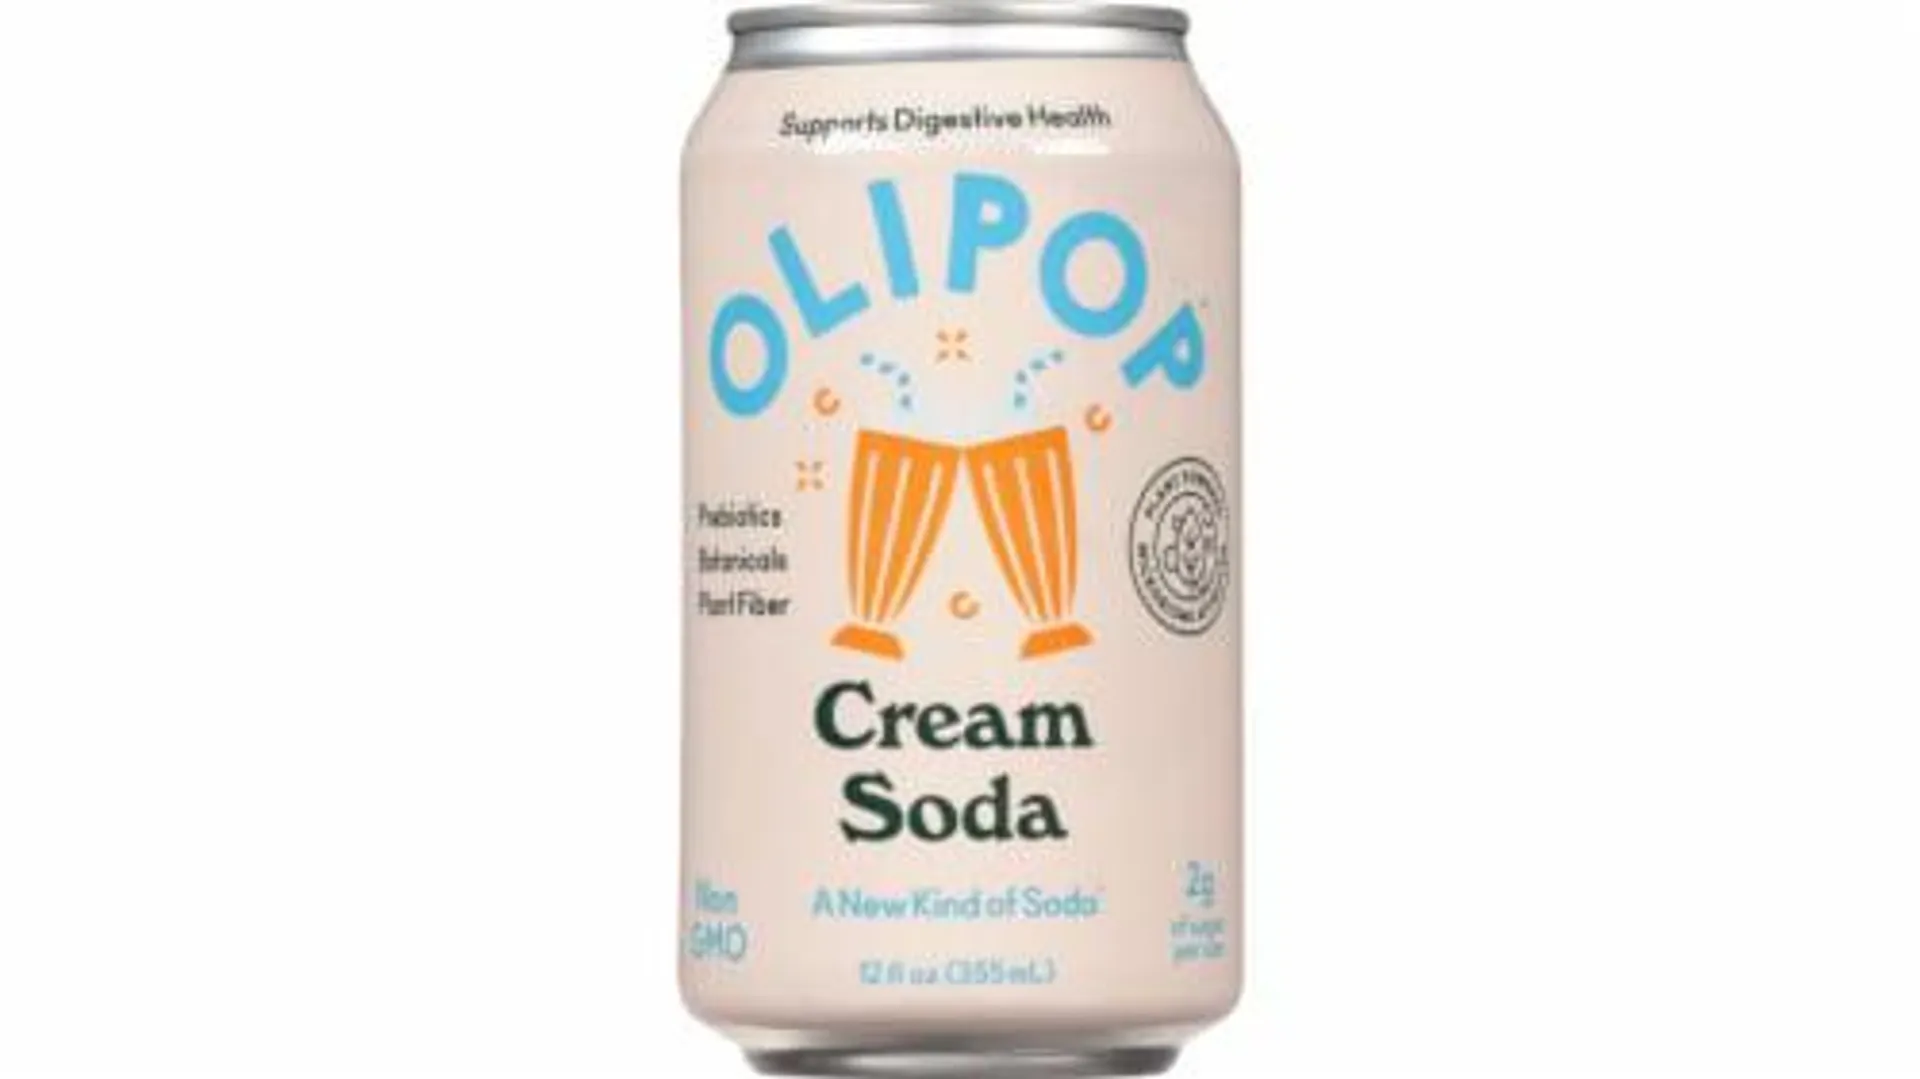 Olipop® Cream Soda Cans